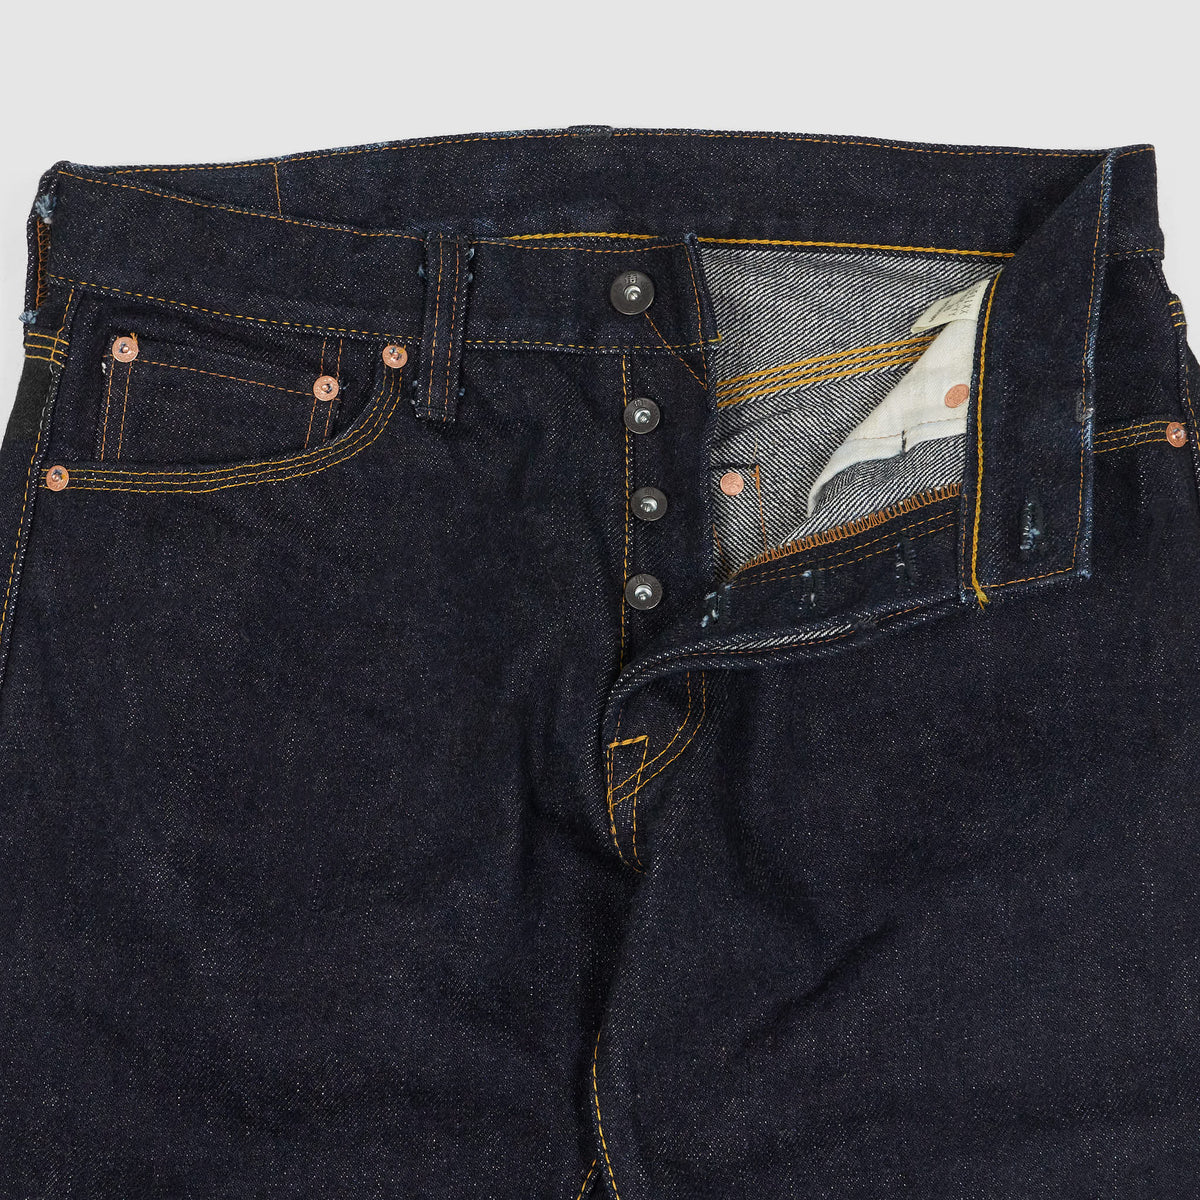 Samurai S25OZ Slim Tapered S511 XX-YY Jeans